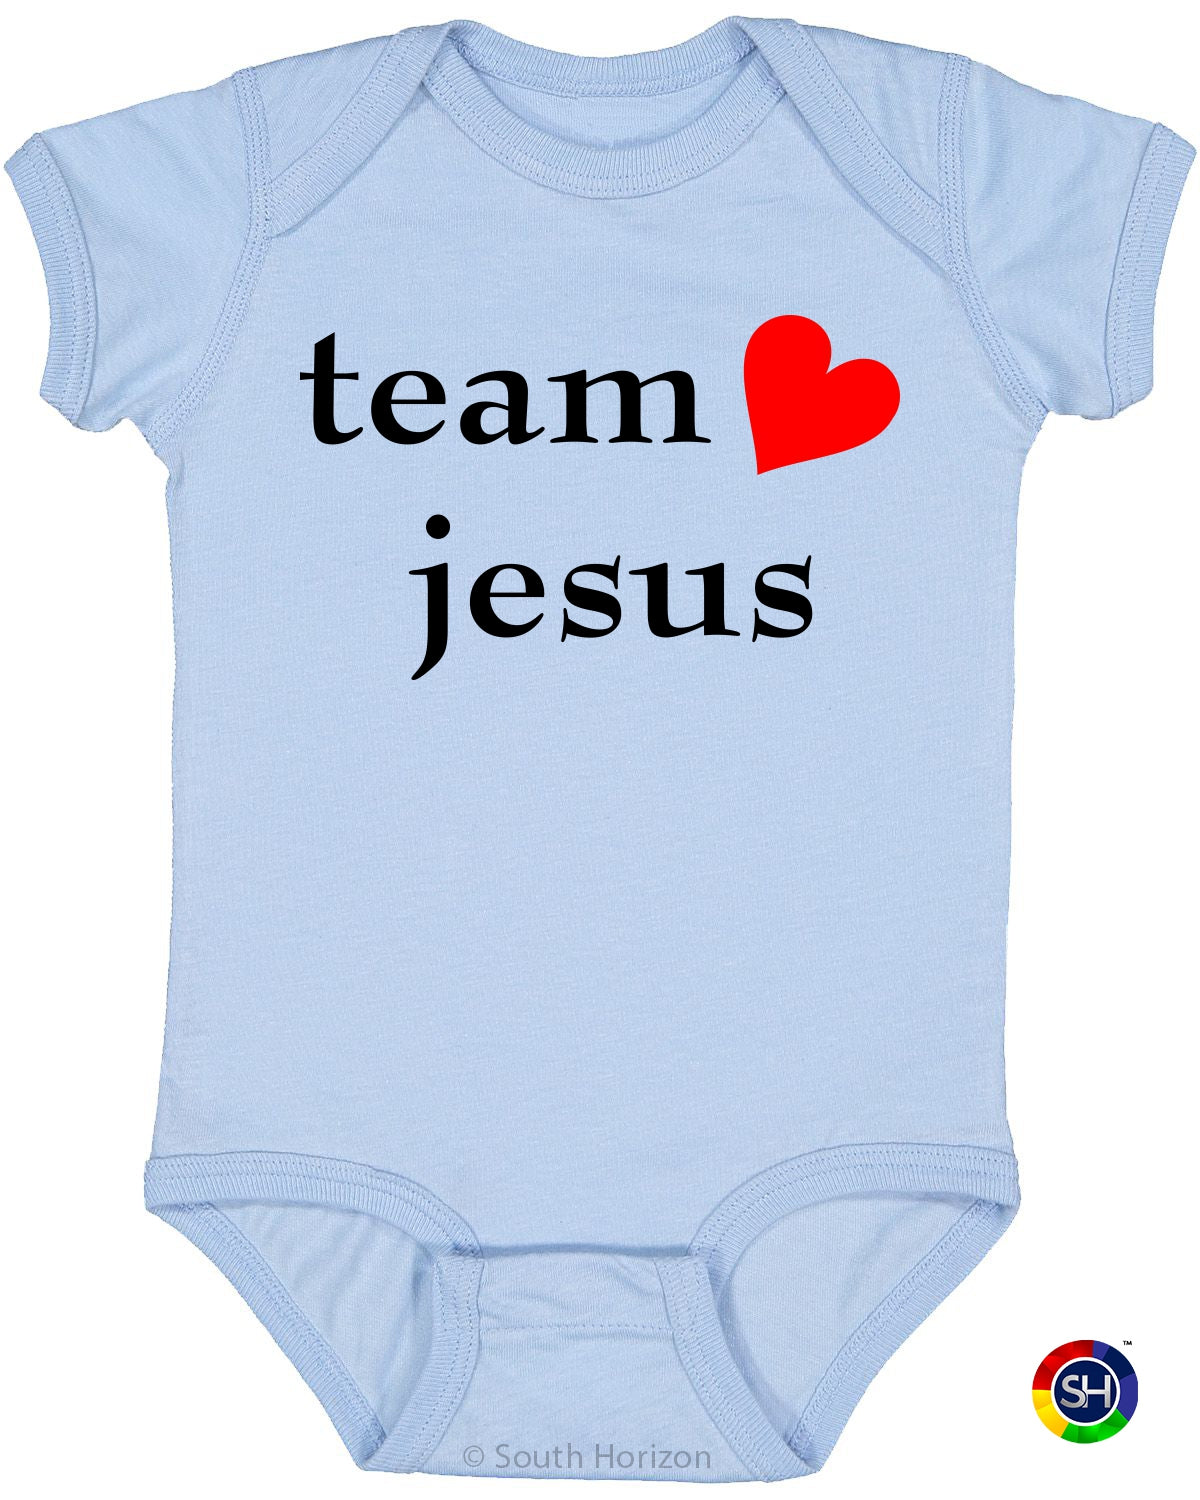 Team Jesus (heart) Infant BodySuit